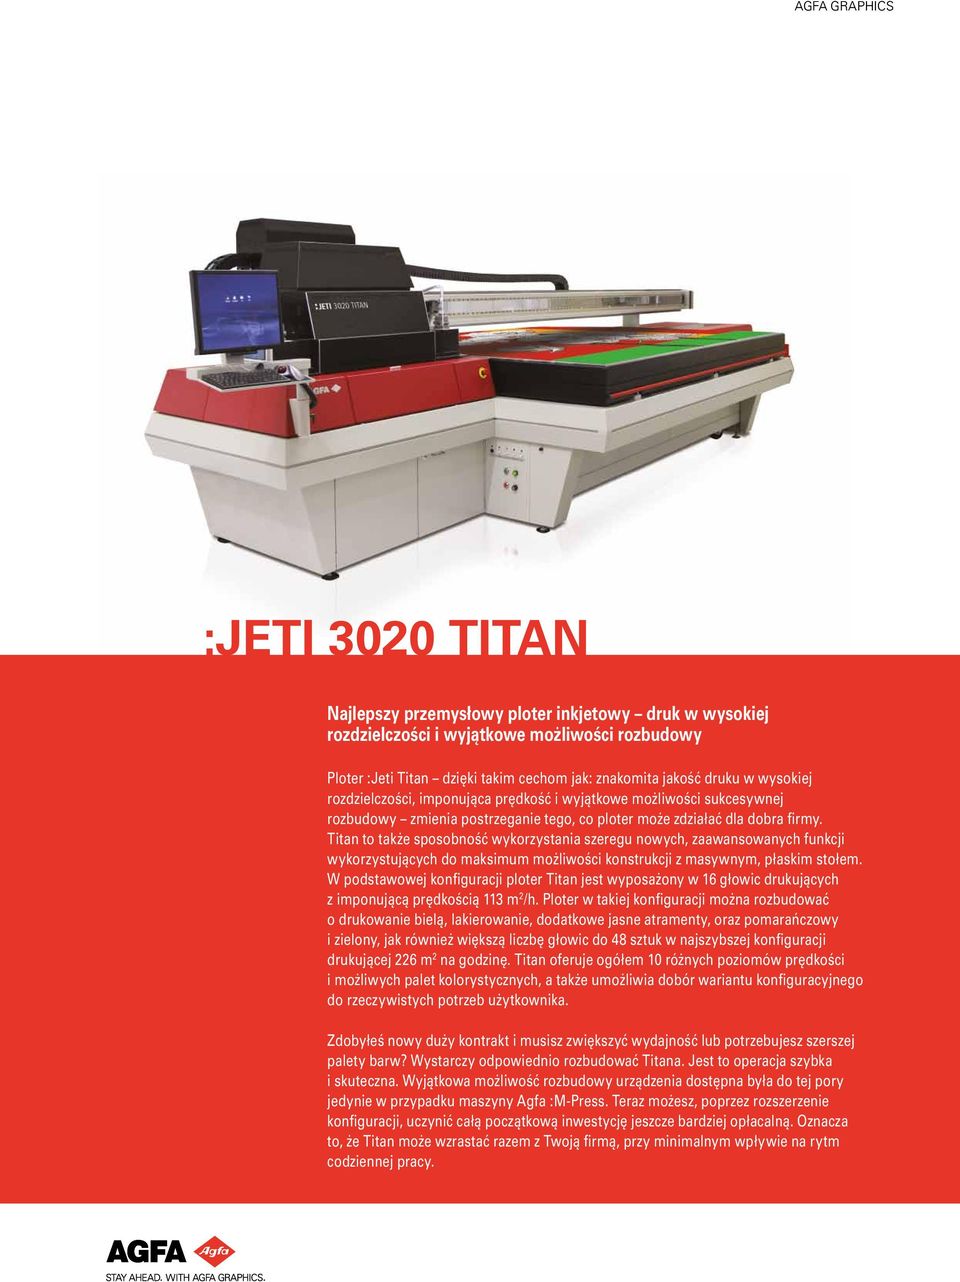 Titan to także sposobność wykorzystania szeregu nowych, zaawansowanych funkcji wykorzystujących do maksimum możliwości konstrukcji z masywnym, płaskim stołem.